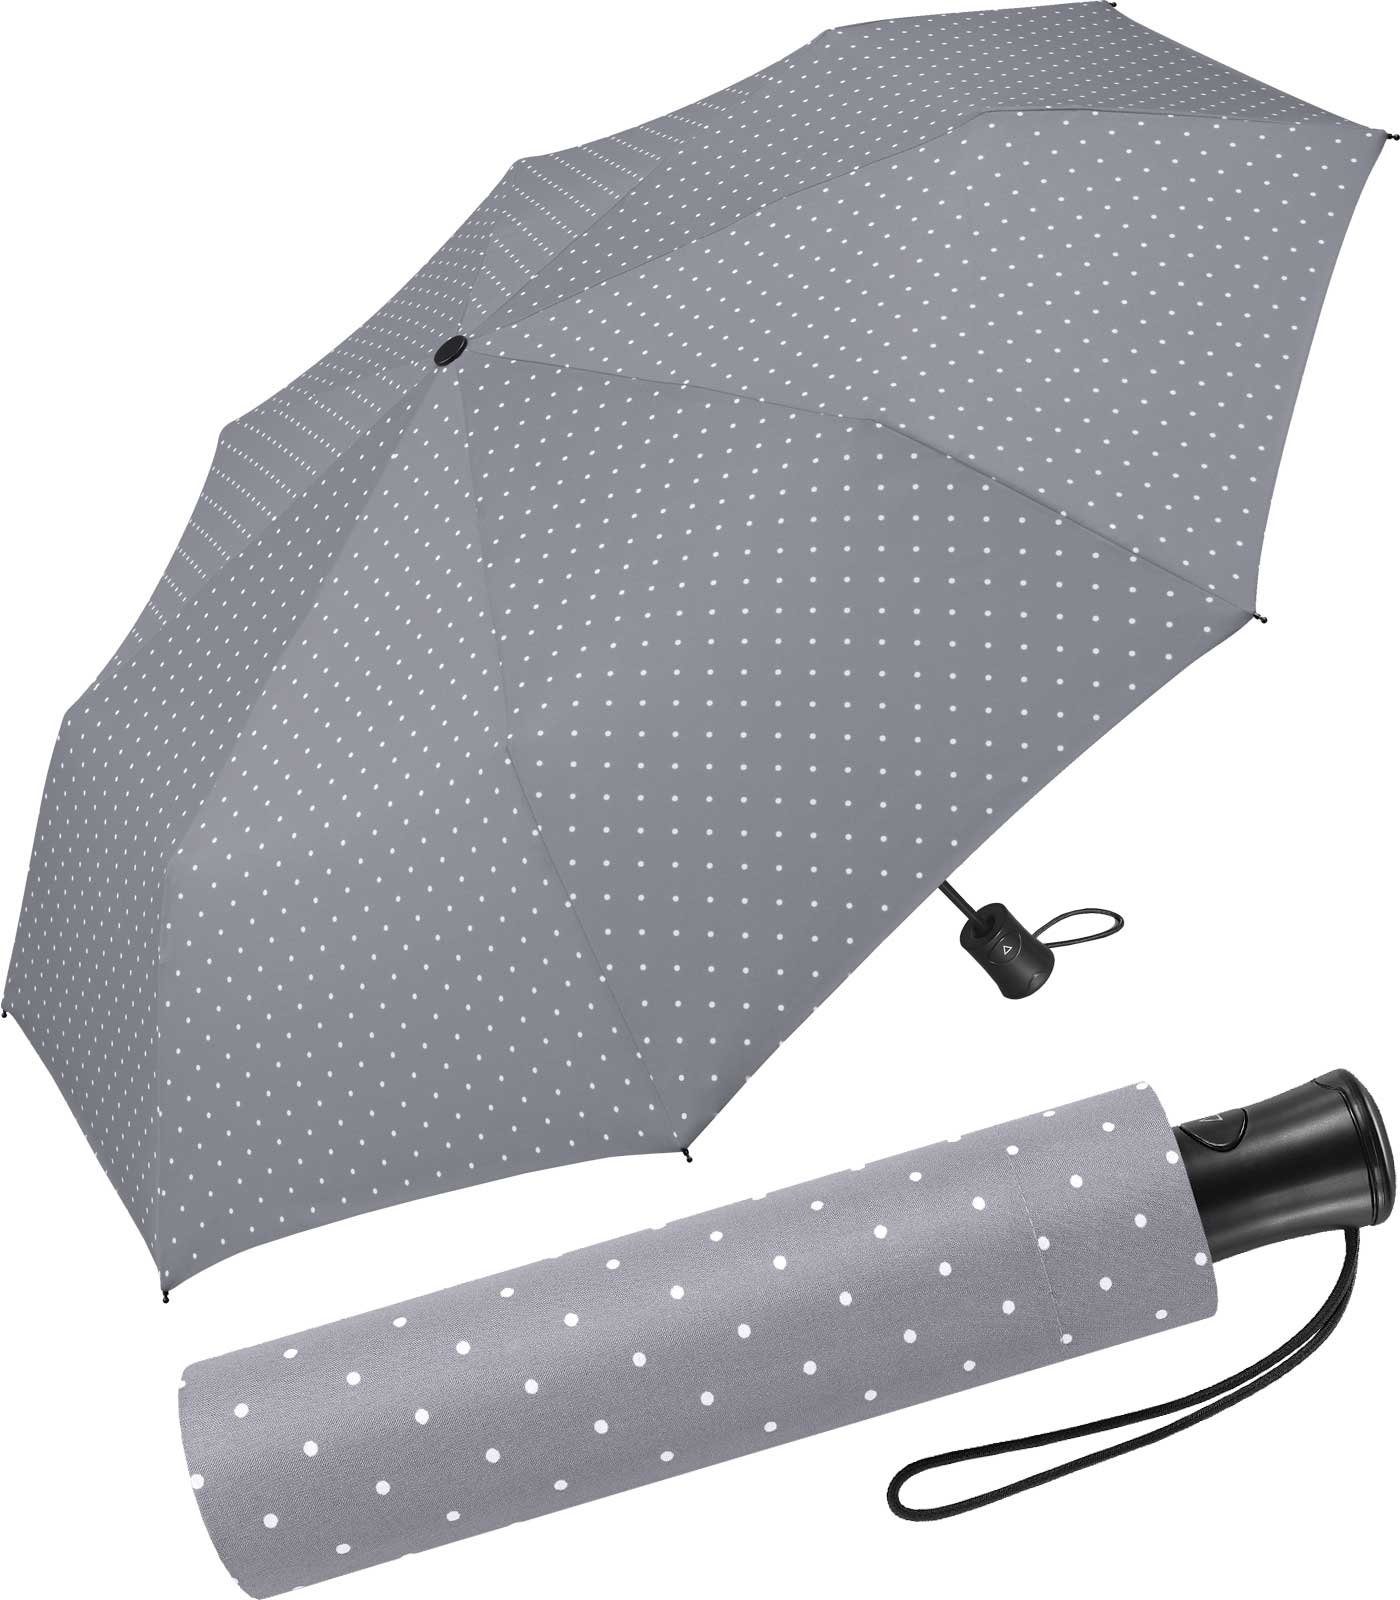 HAPPY RAIN Taschenregenschirm schöner Regenschirm mit Auf-Automatik für Damen, in vielen Farben mit kleinen Punkten - grau hellblau